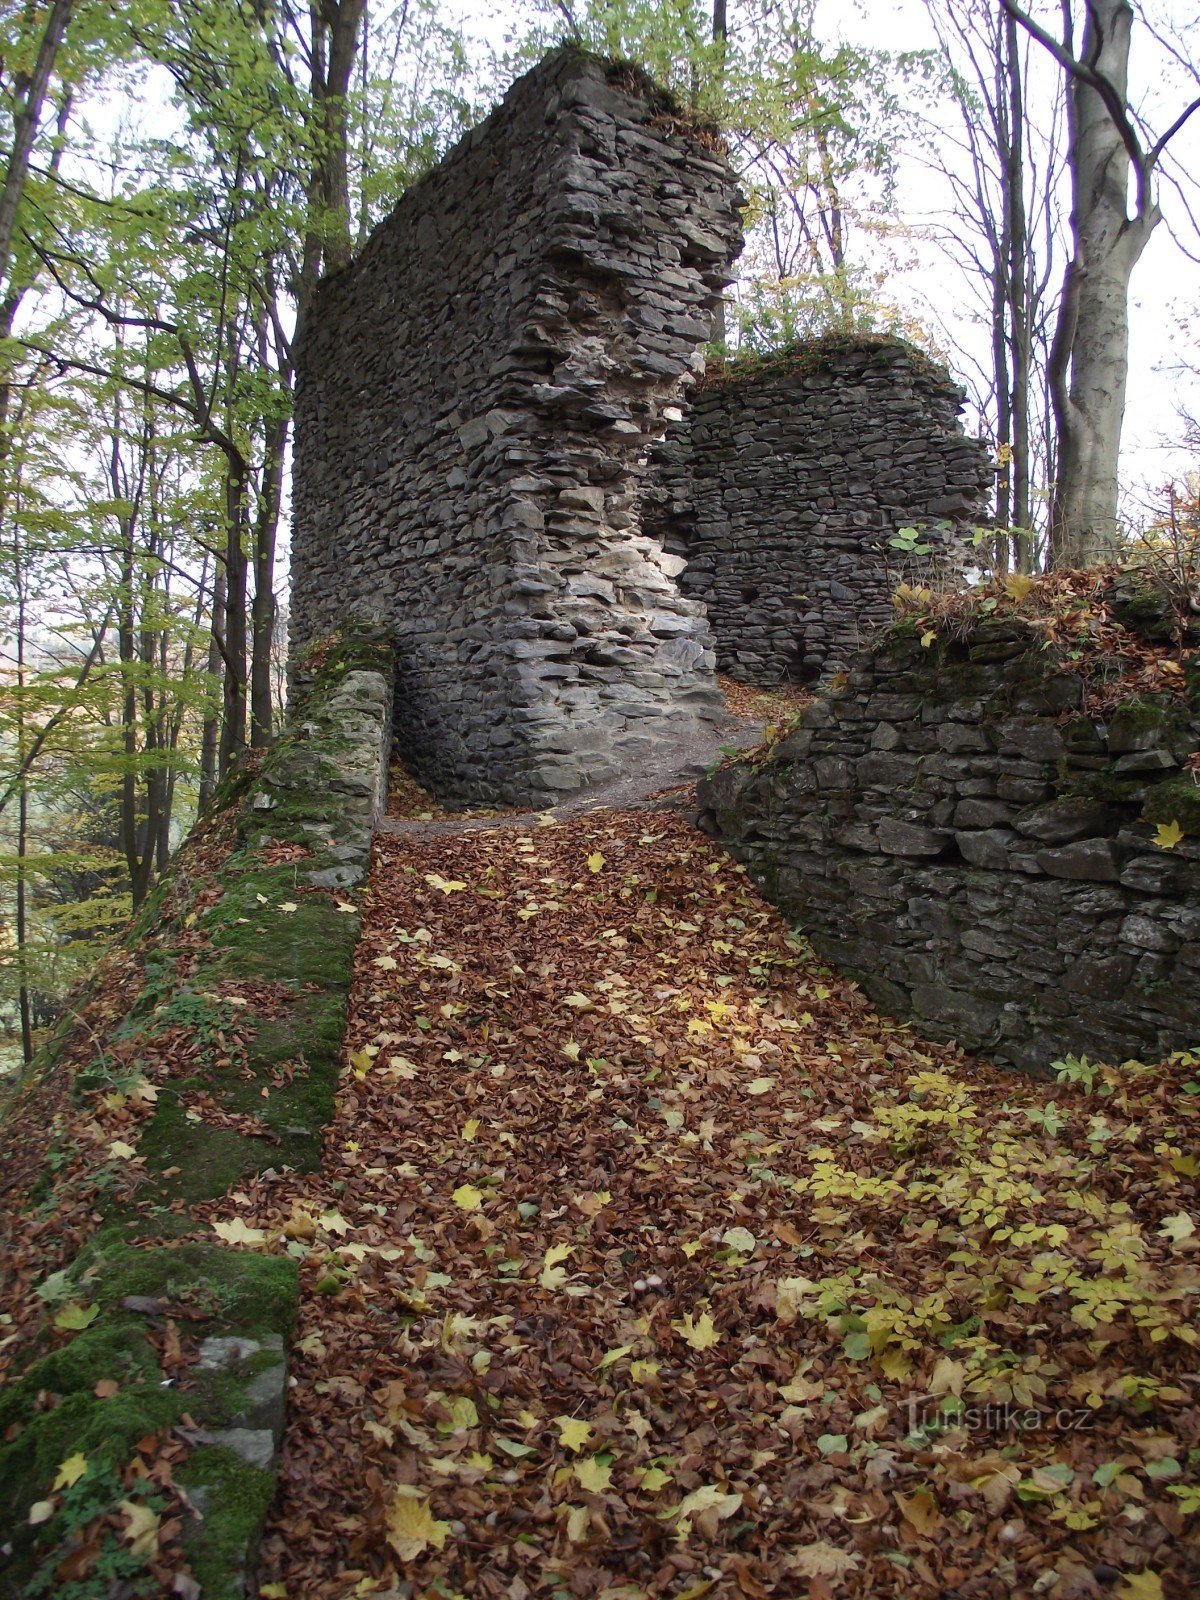 Đến Nový Hrad hoặc sự quyến rũ của tàn tích mùa thu (Lužná - Nový Hrad - Bohdíkov)